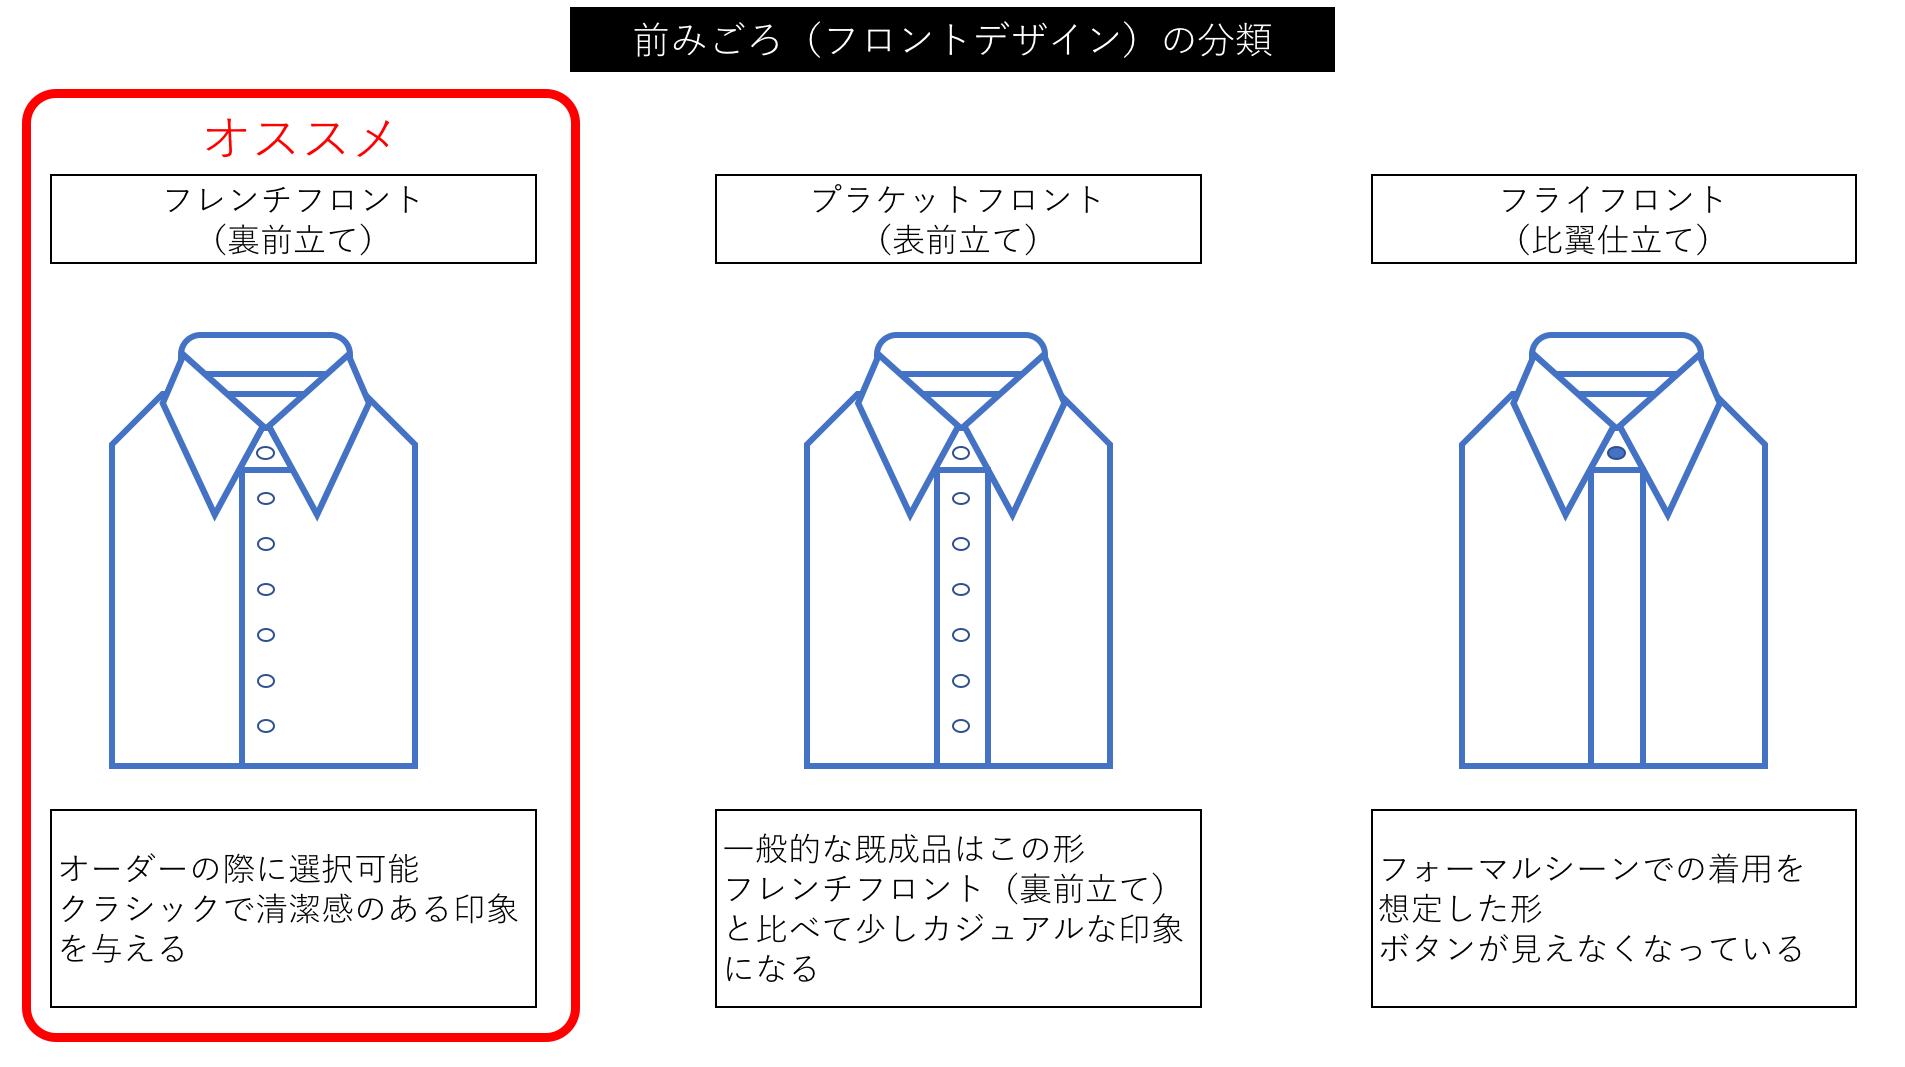 ぶっちゃけスーツより重要 ワイシャツの効果と購入法攻略 Mezzoforte Lounge 論理的に一流のスーツスタイルへ